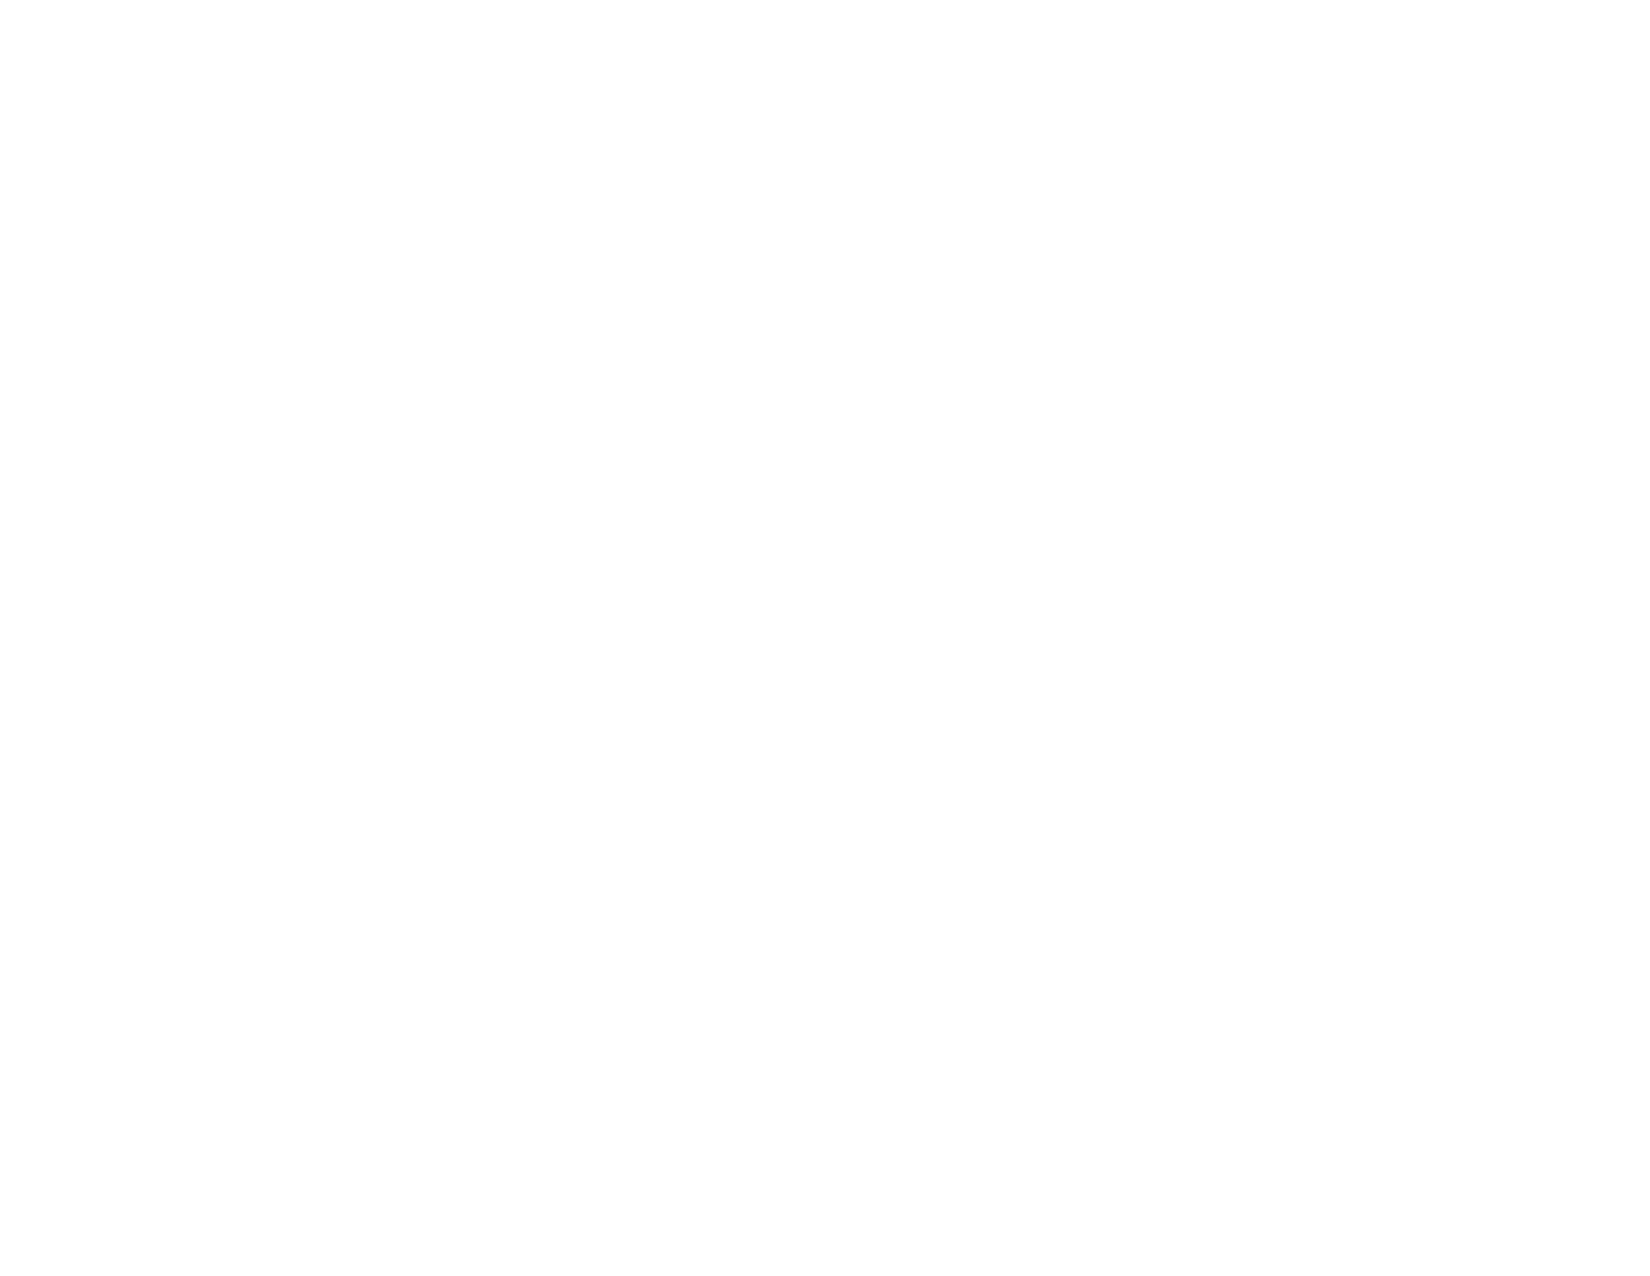 Magic jungle: Un manual para desarrollar el espíritu creativo